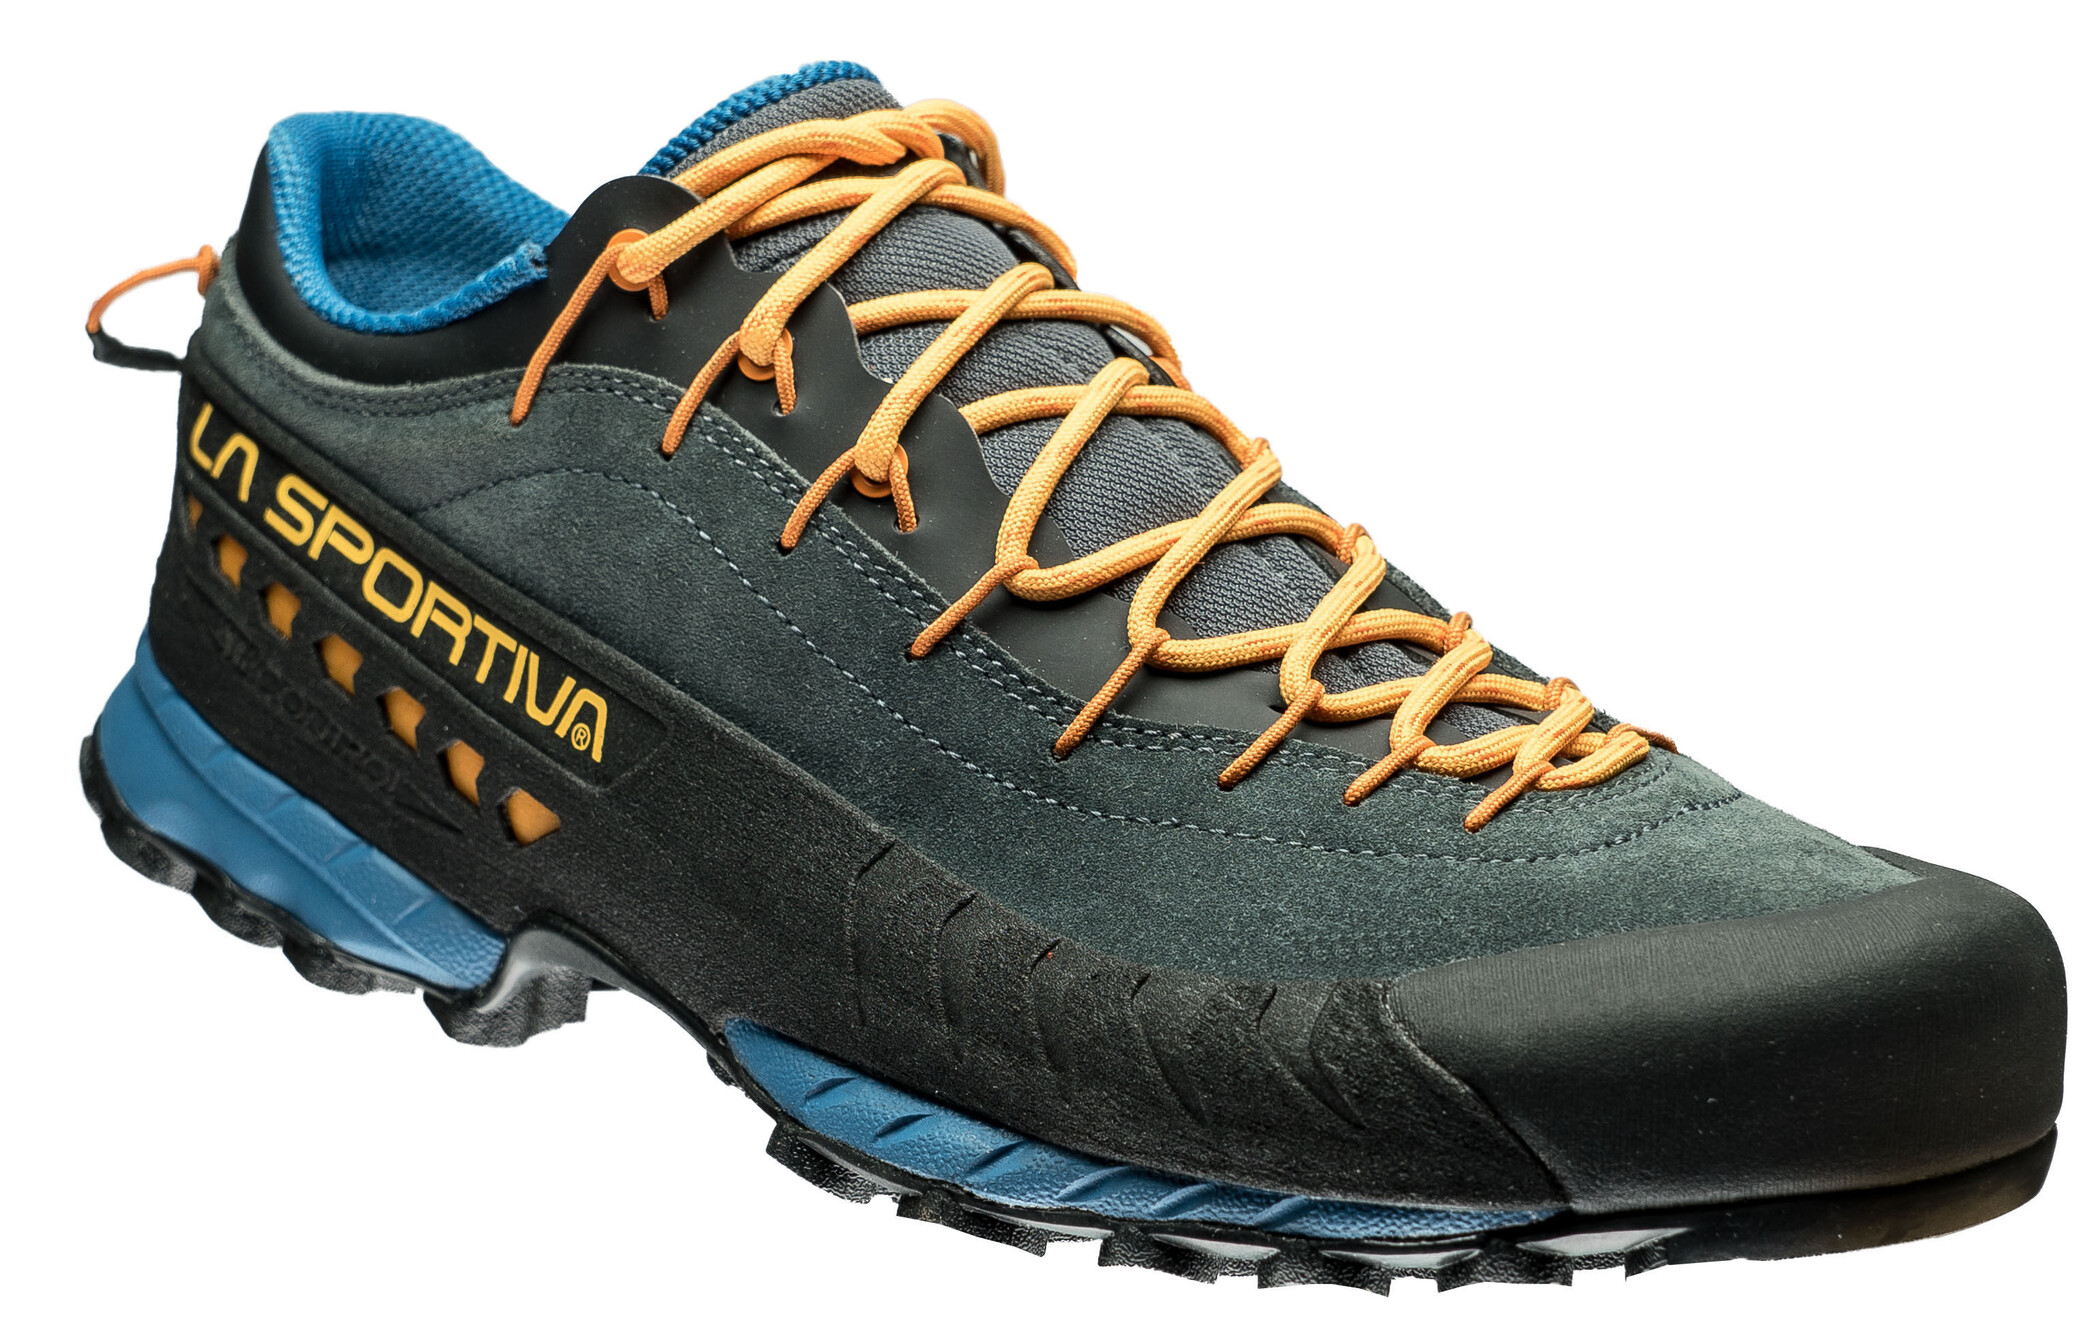 DUORO Chaussures de randonnée pour femme chaussures de marche et de sport respirantes chaussures d’eau en maille chaussures de course à pied sandales pour escalade 35-47 